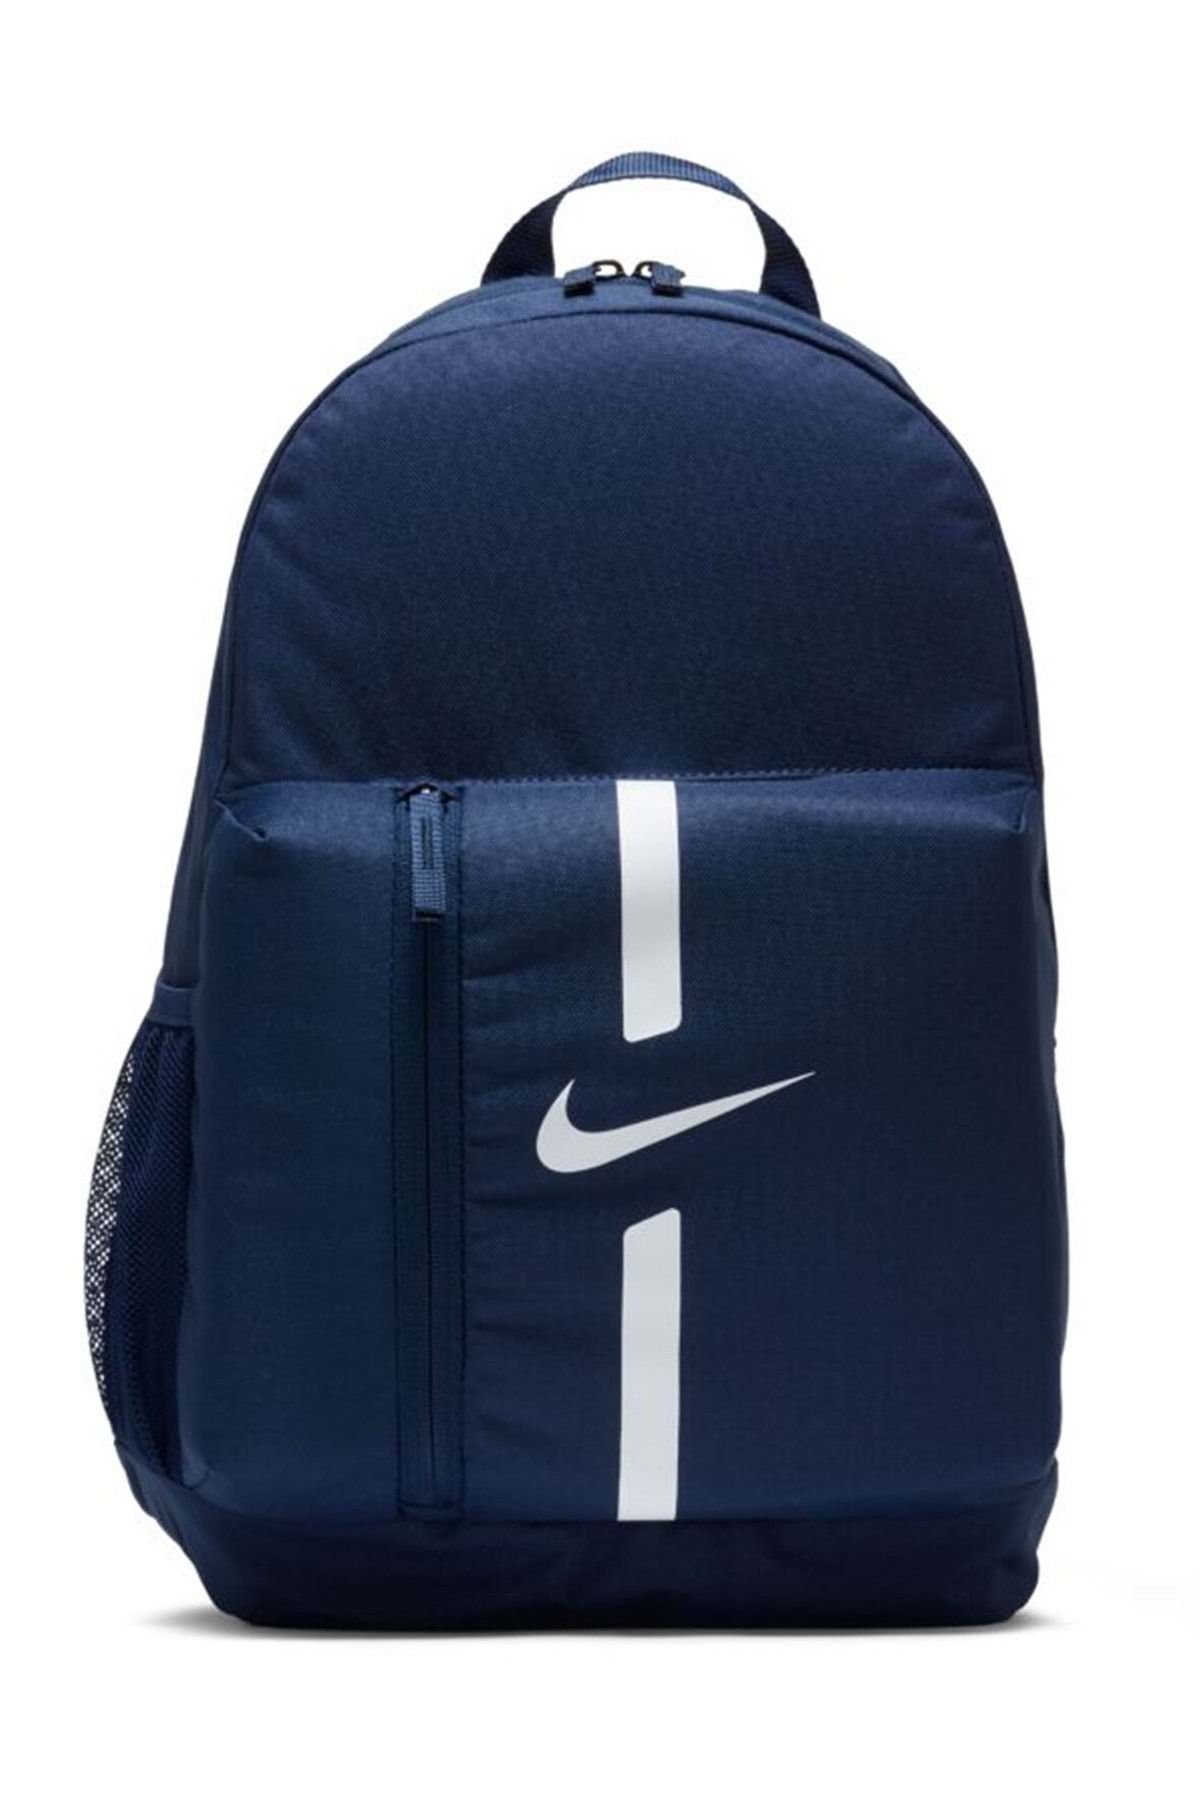 Nike Academy Team Da2571-411 Backpack Sırt Çantası Unisex Sırt Çantası Lacivert